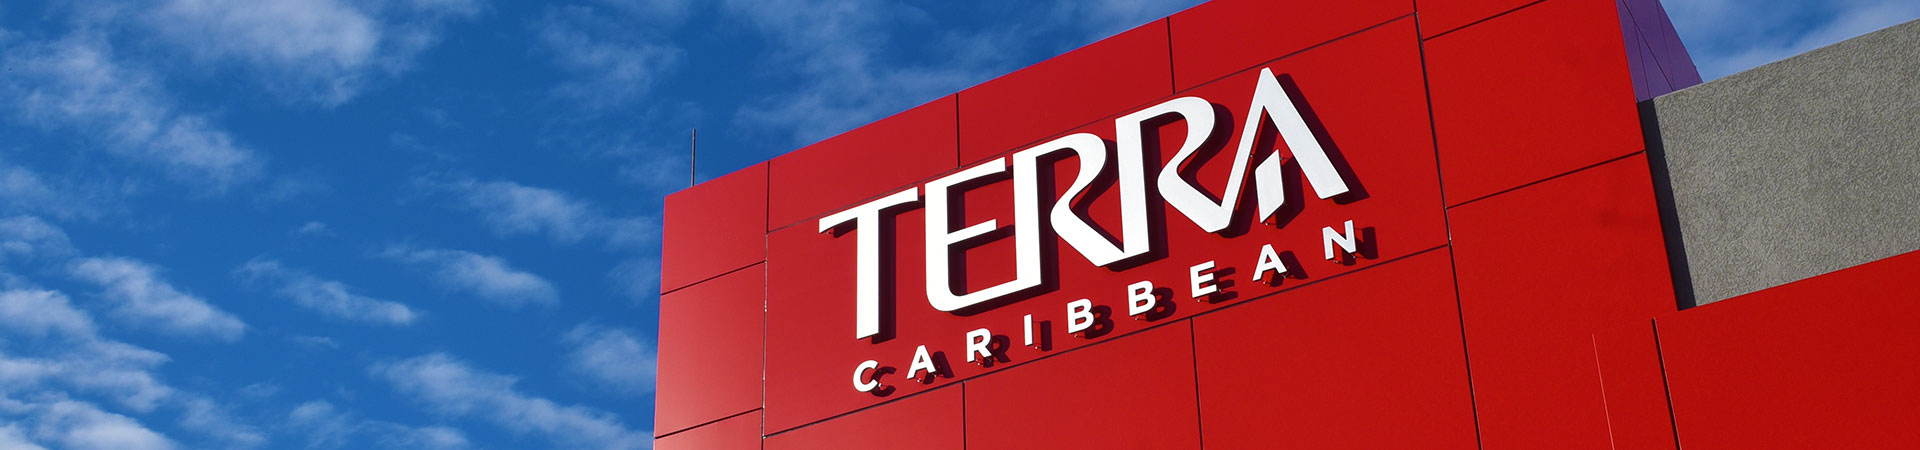 About Terra Luxury - TErra AboutUs 1920x450